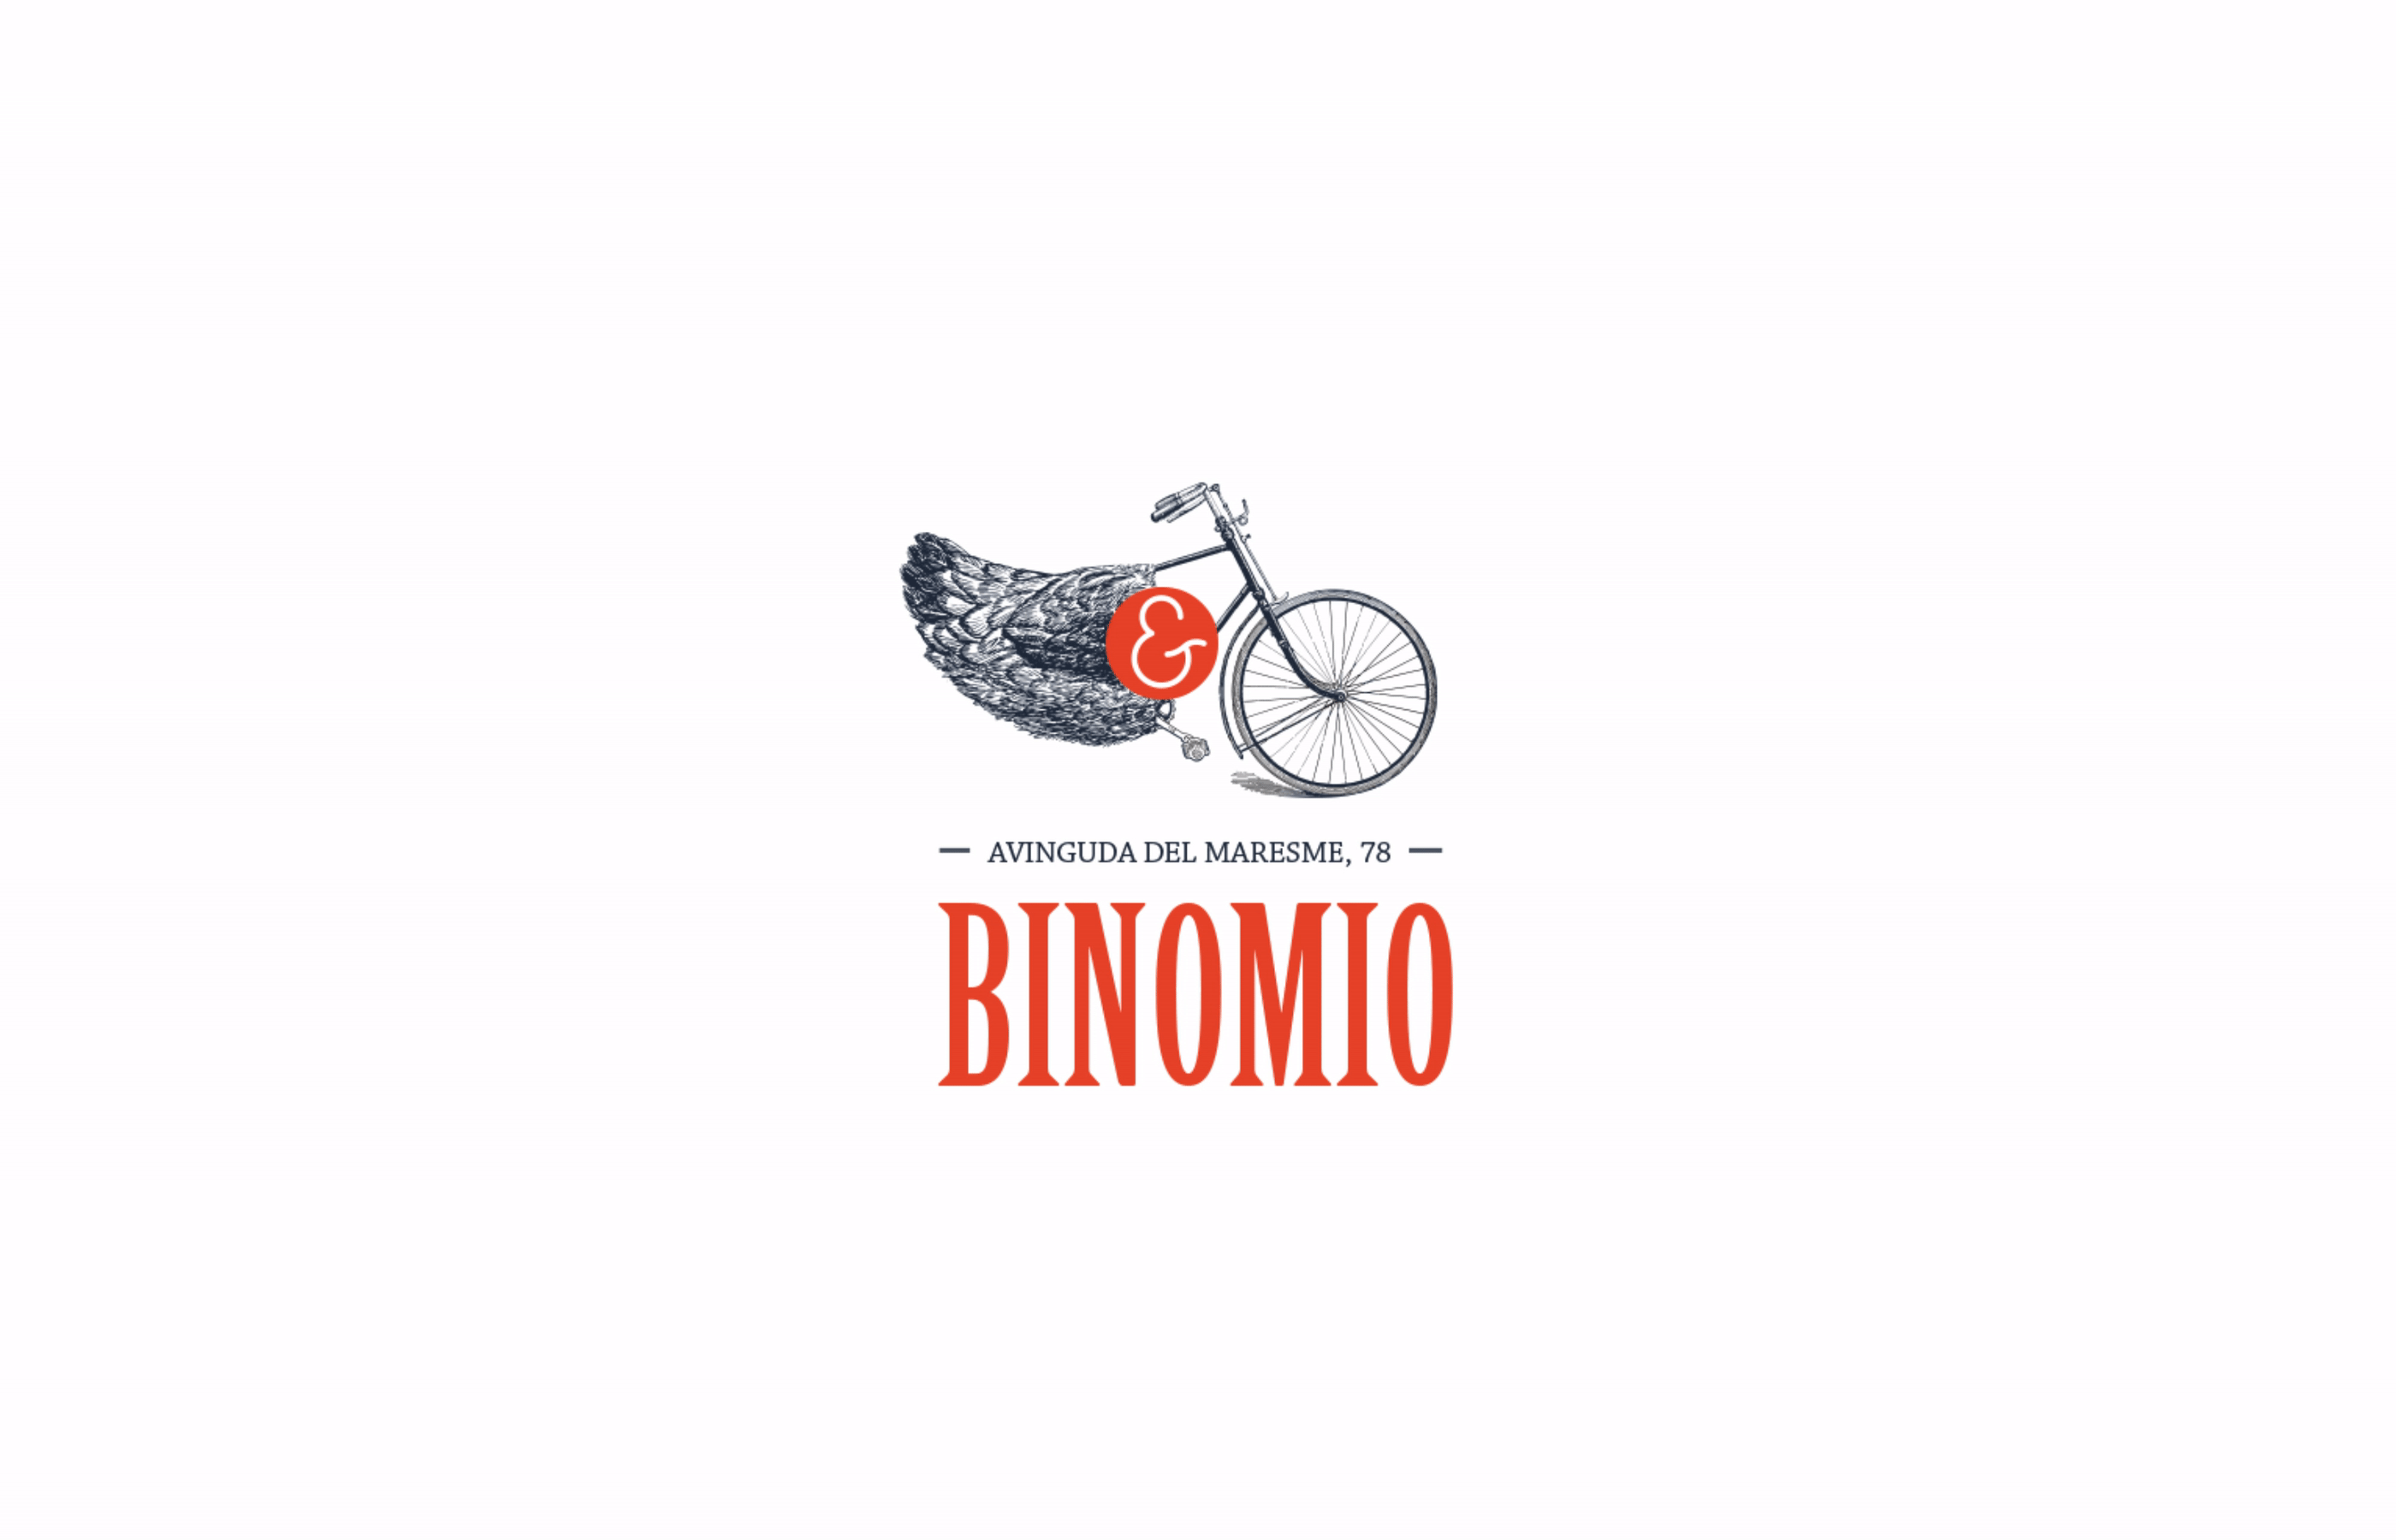 Binomio